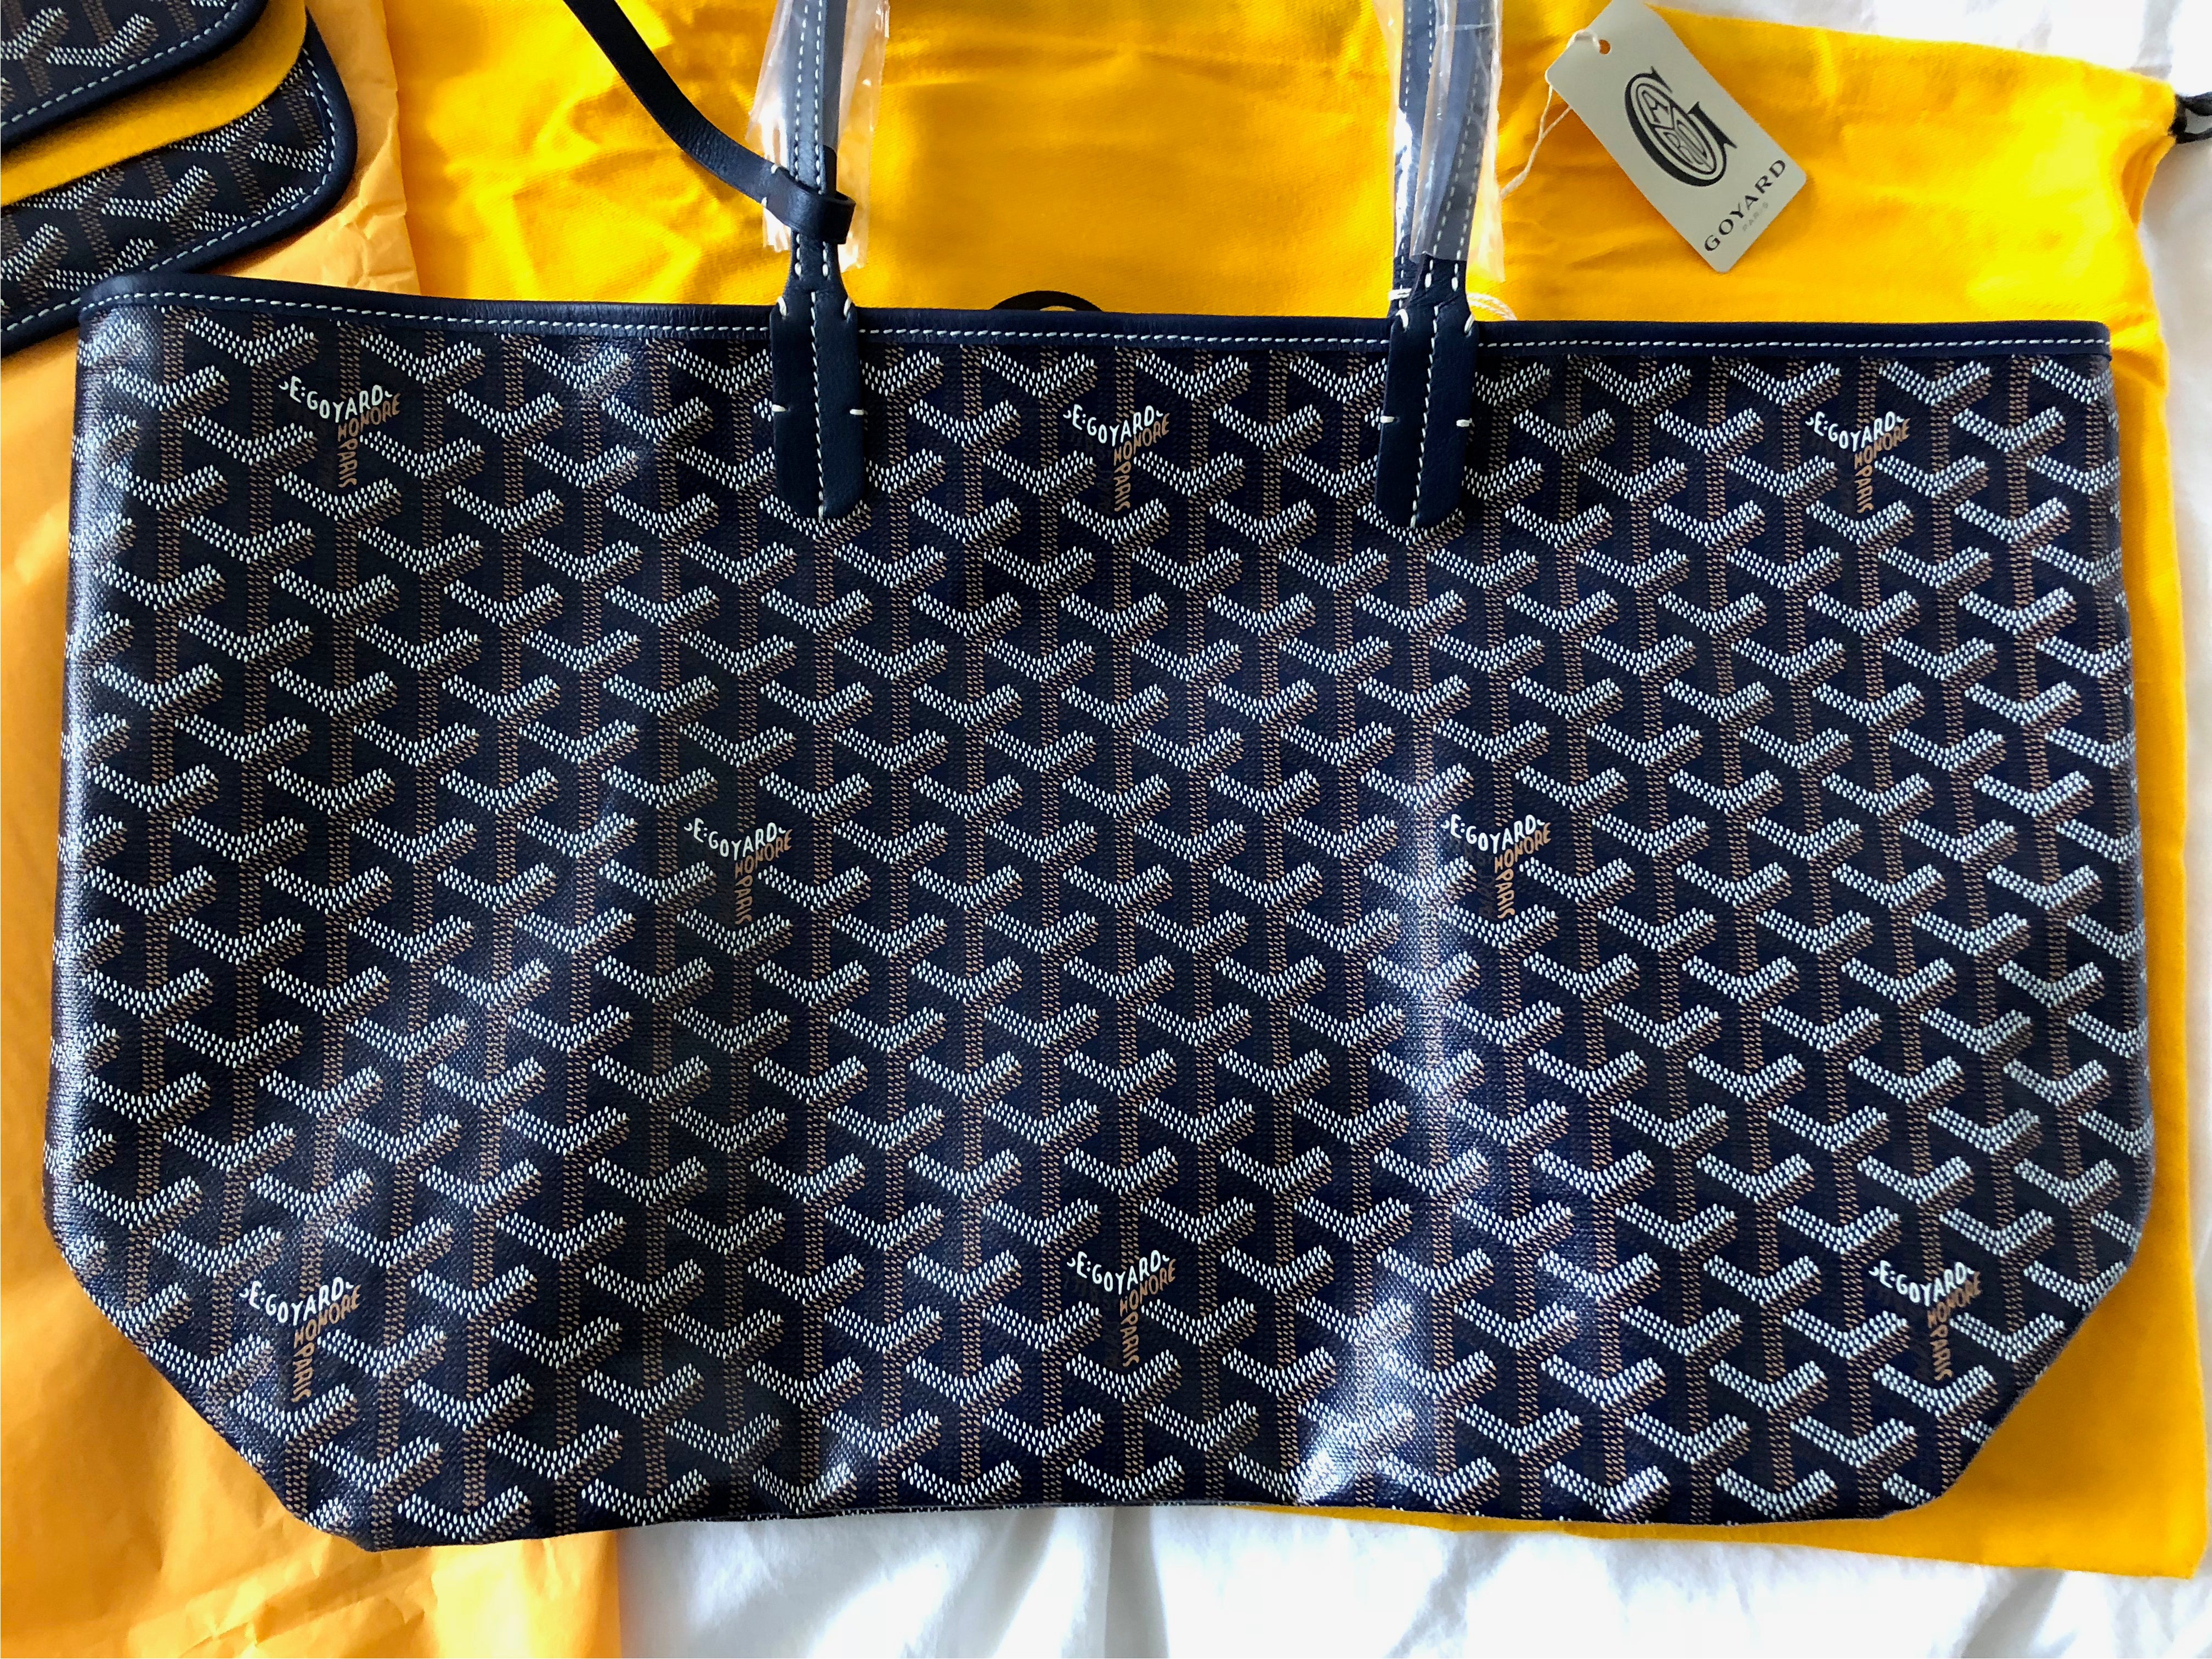 Goyard Saint Louis Pm Tote Bag Blue With Pouch PXL1370 – LuxuryPromise